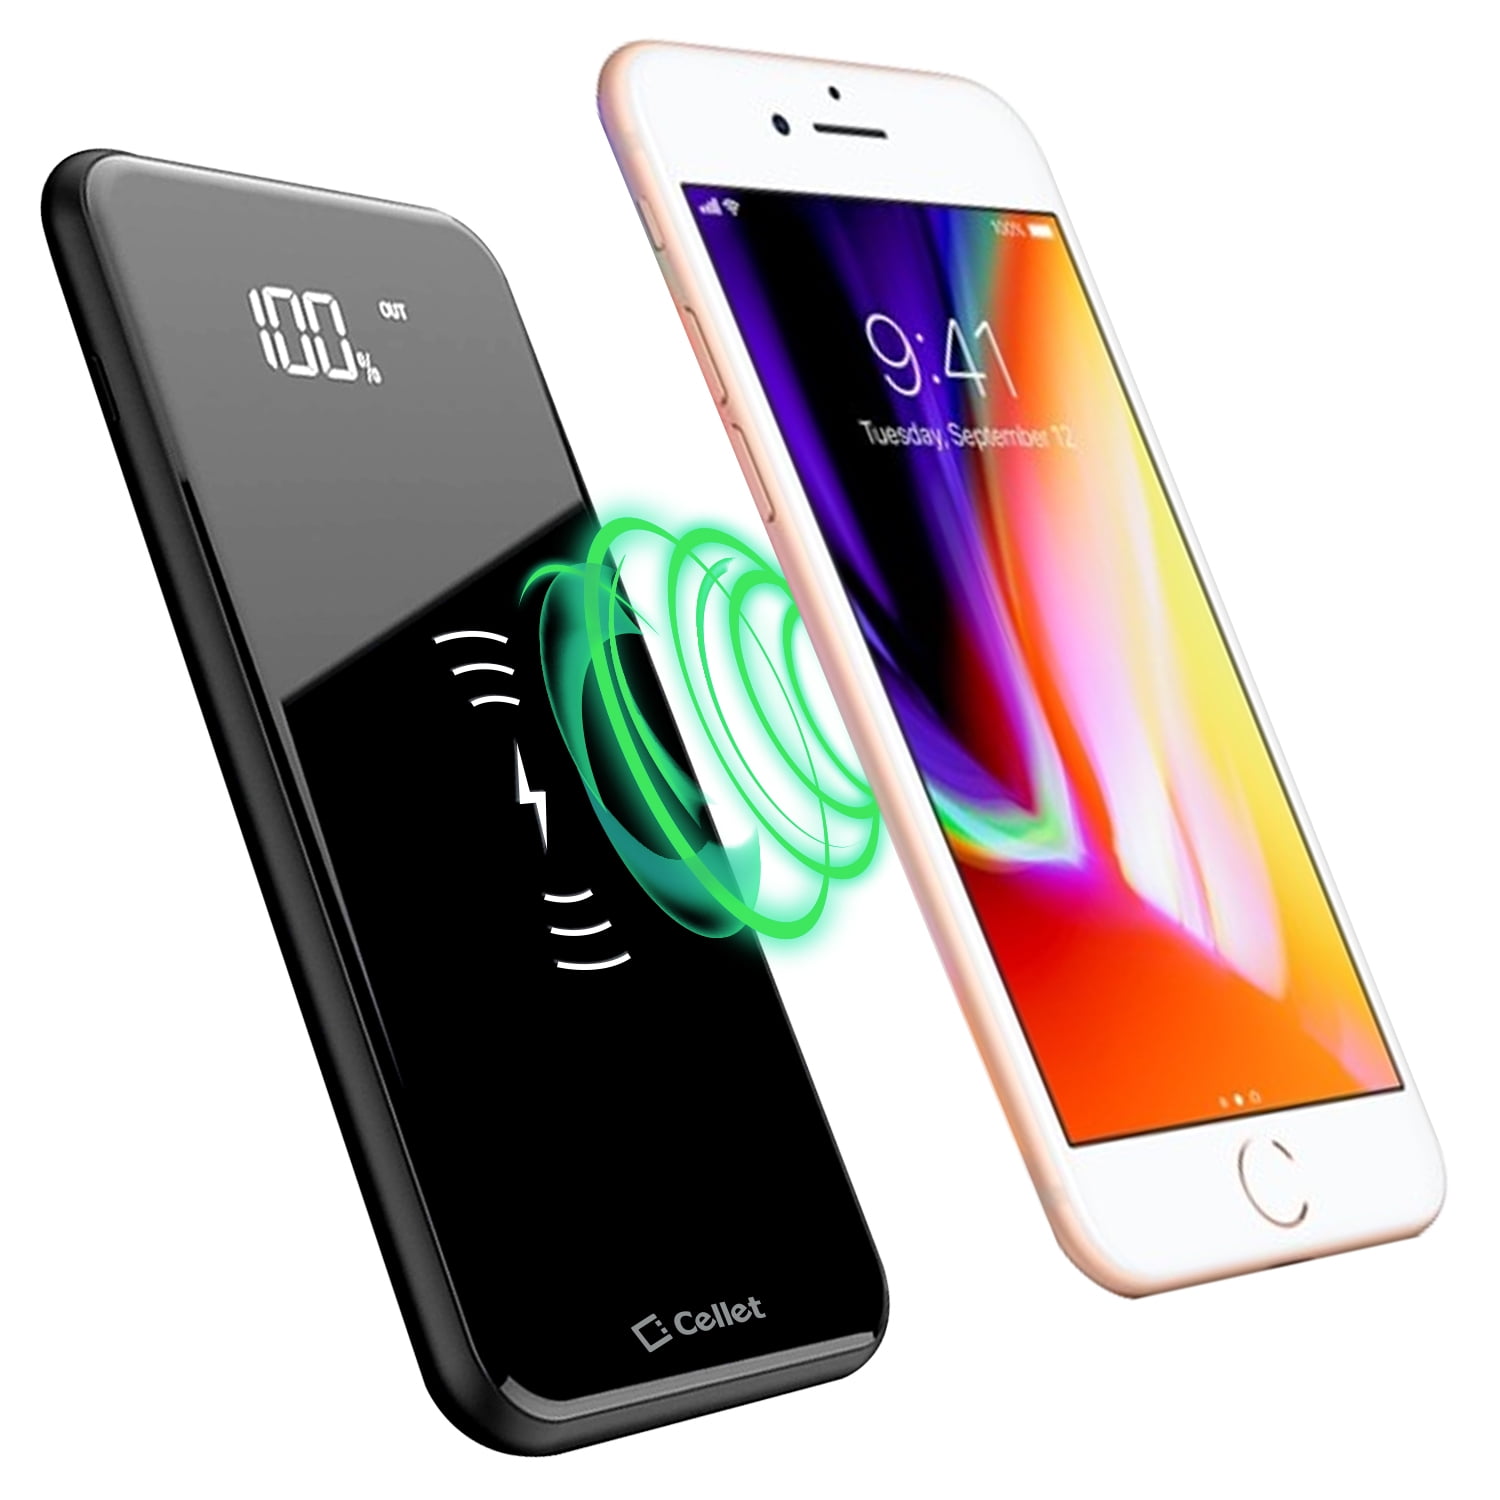 Wireless Power Bank - IPhone 8 - Up' Wireless Charging - Store Exelium -  UPMAI8C + UPM7U02B